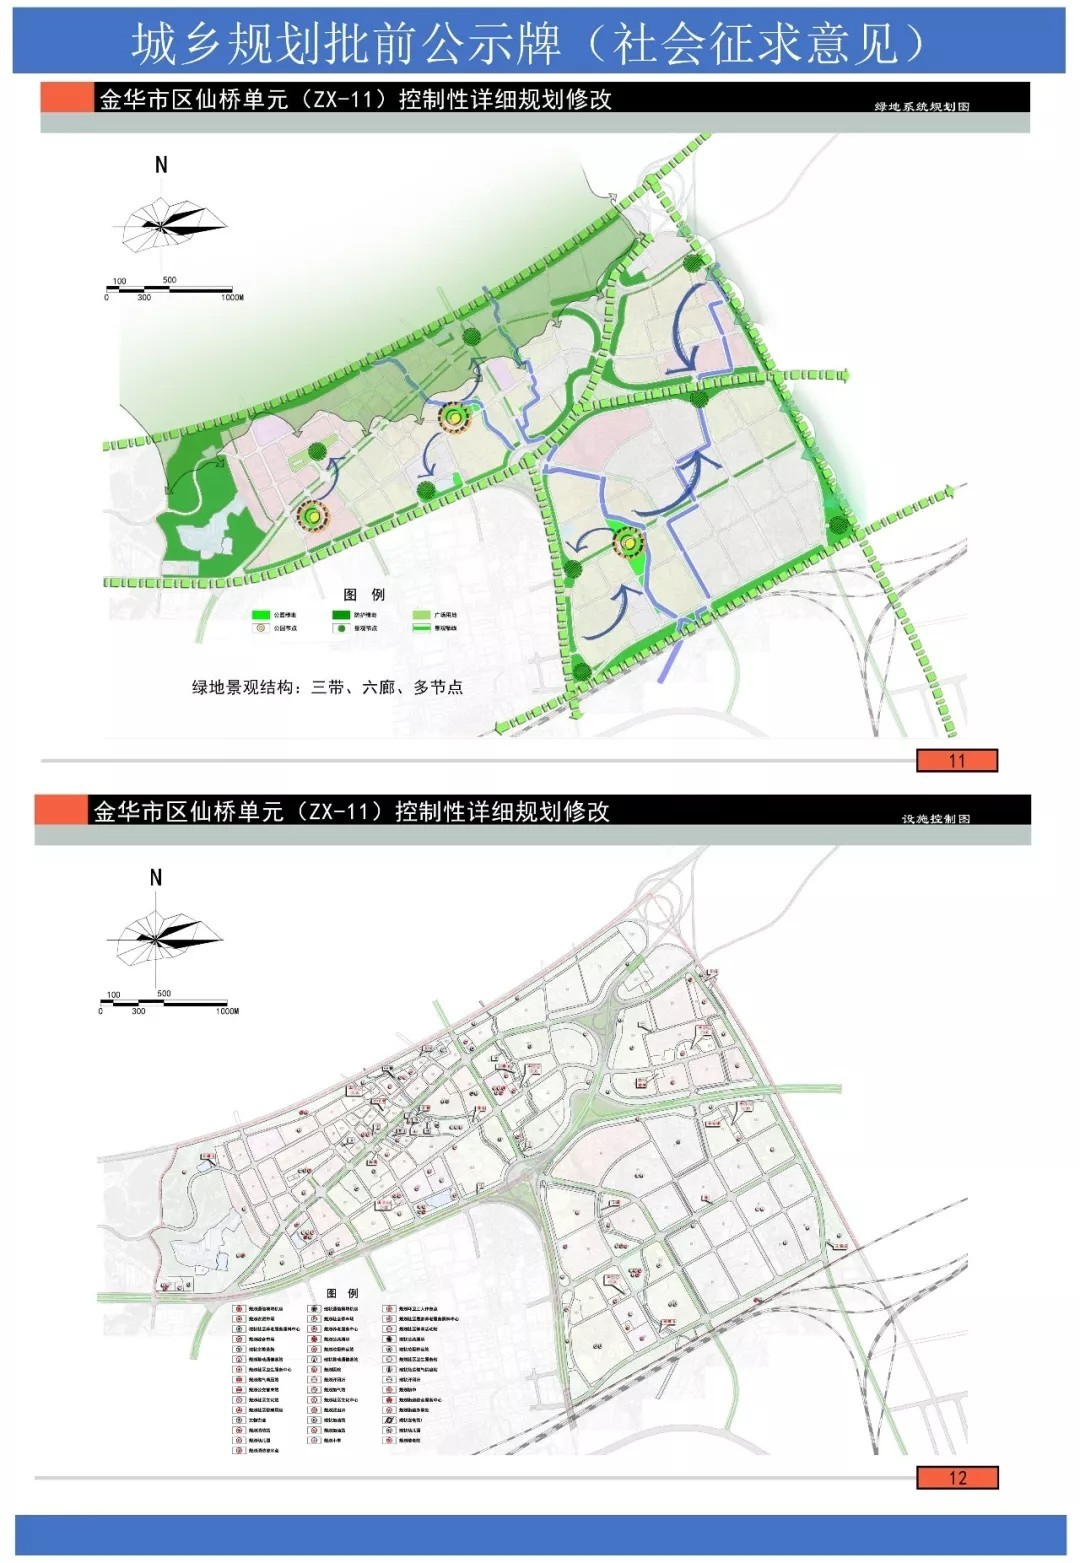 金华东仙桥区块迎来大开发,规划局发布规划修改草案公告